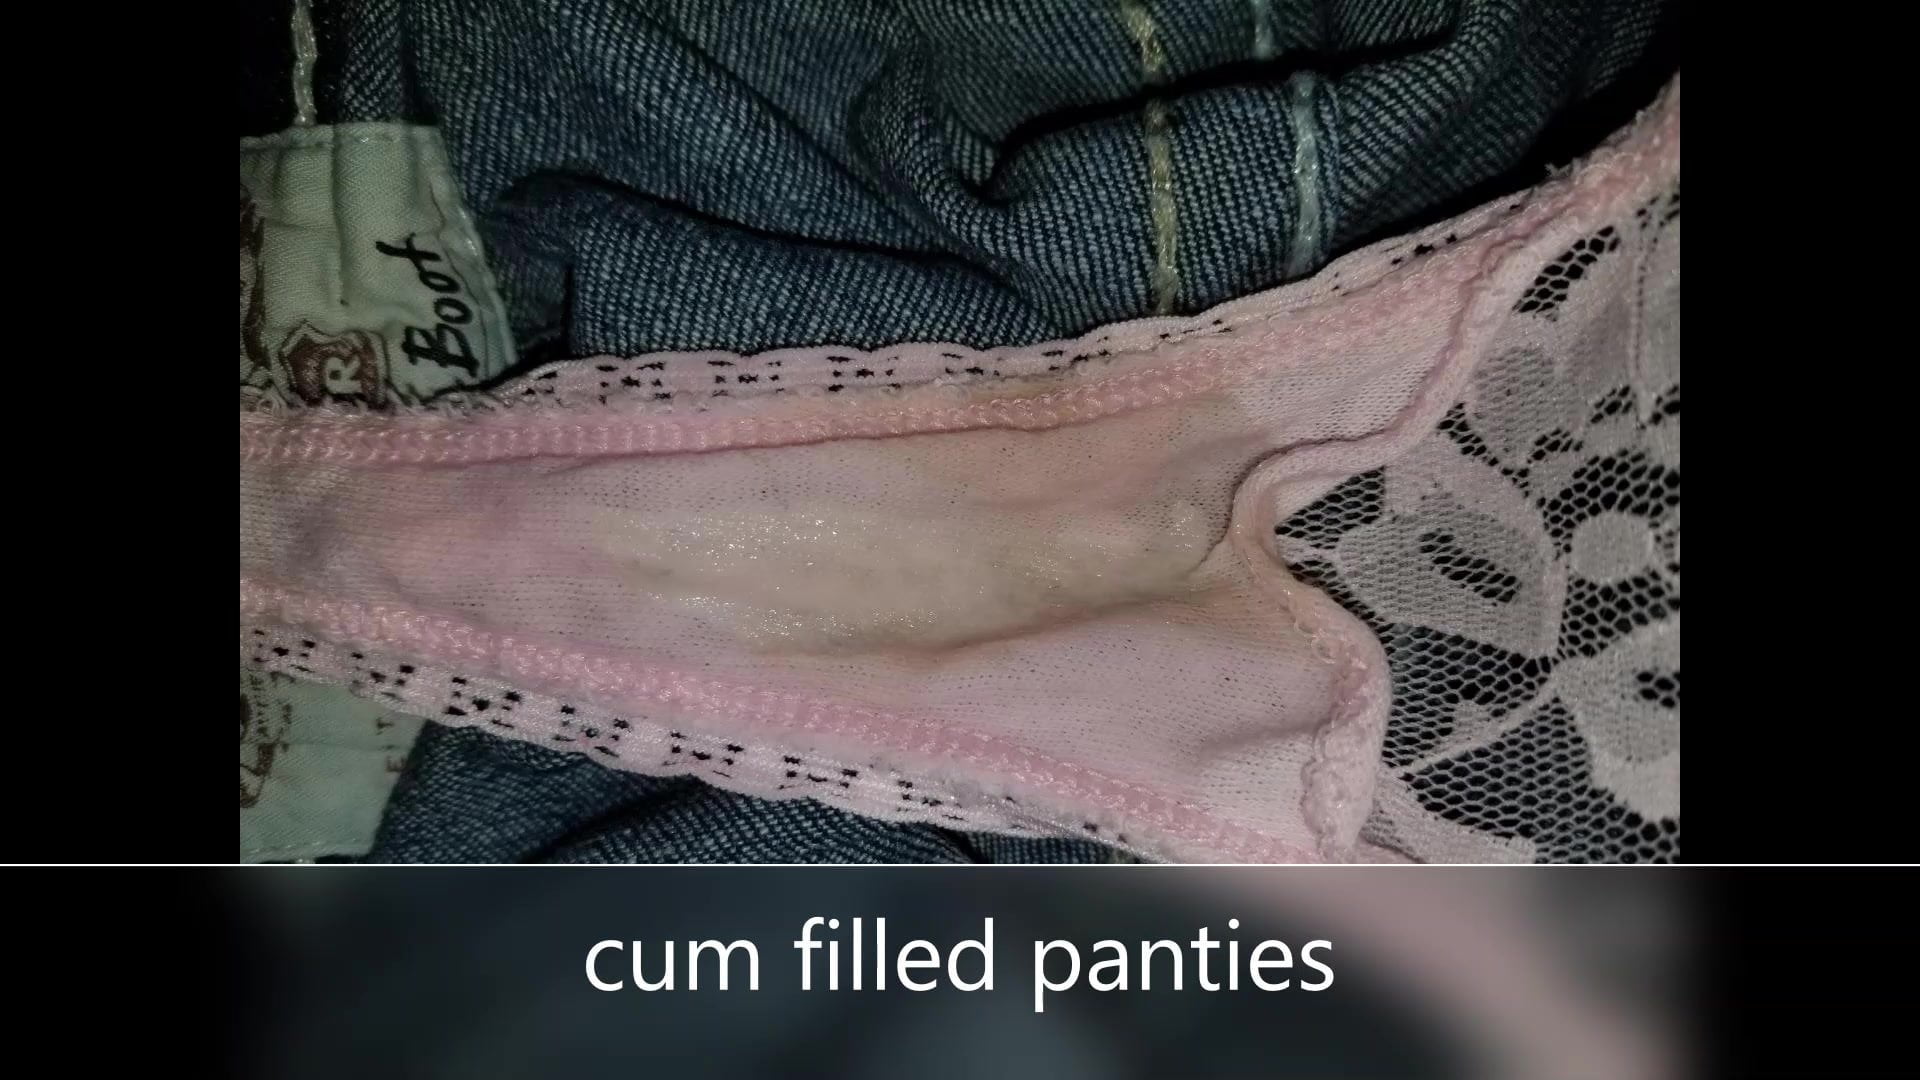 Cuckold Eating Cum Filled Panties